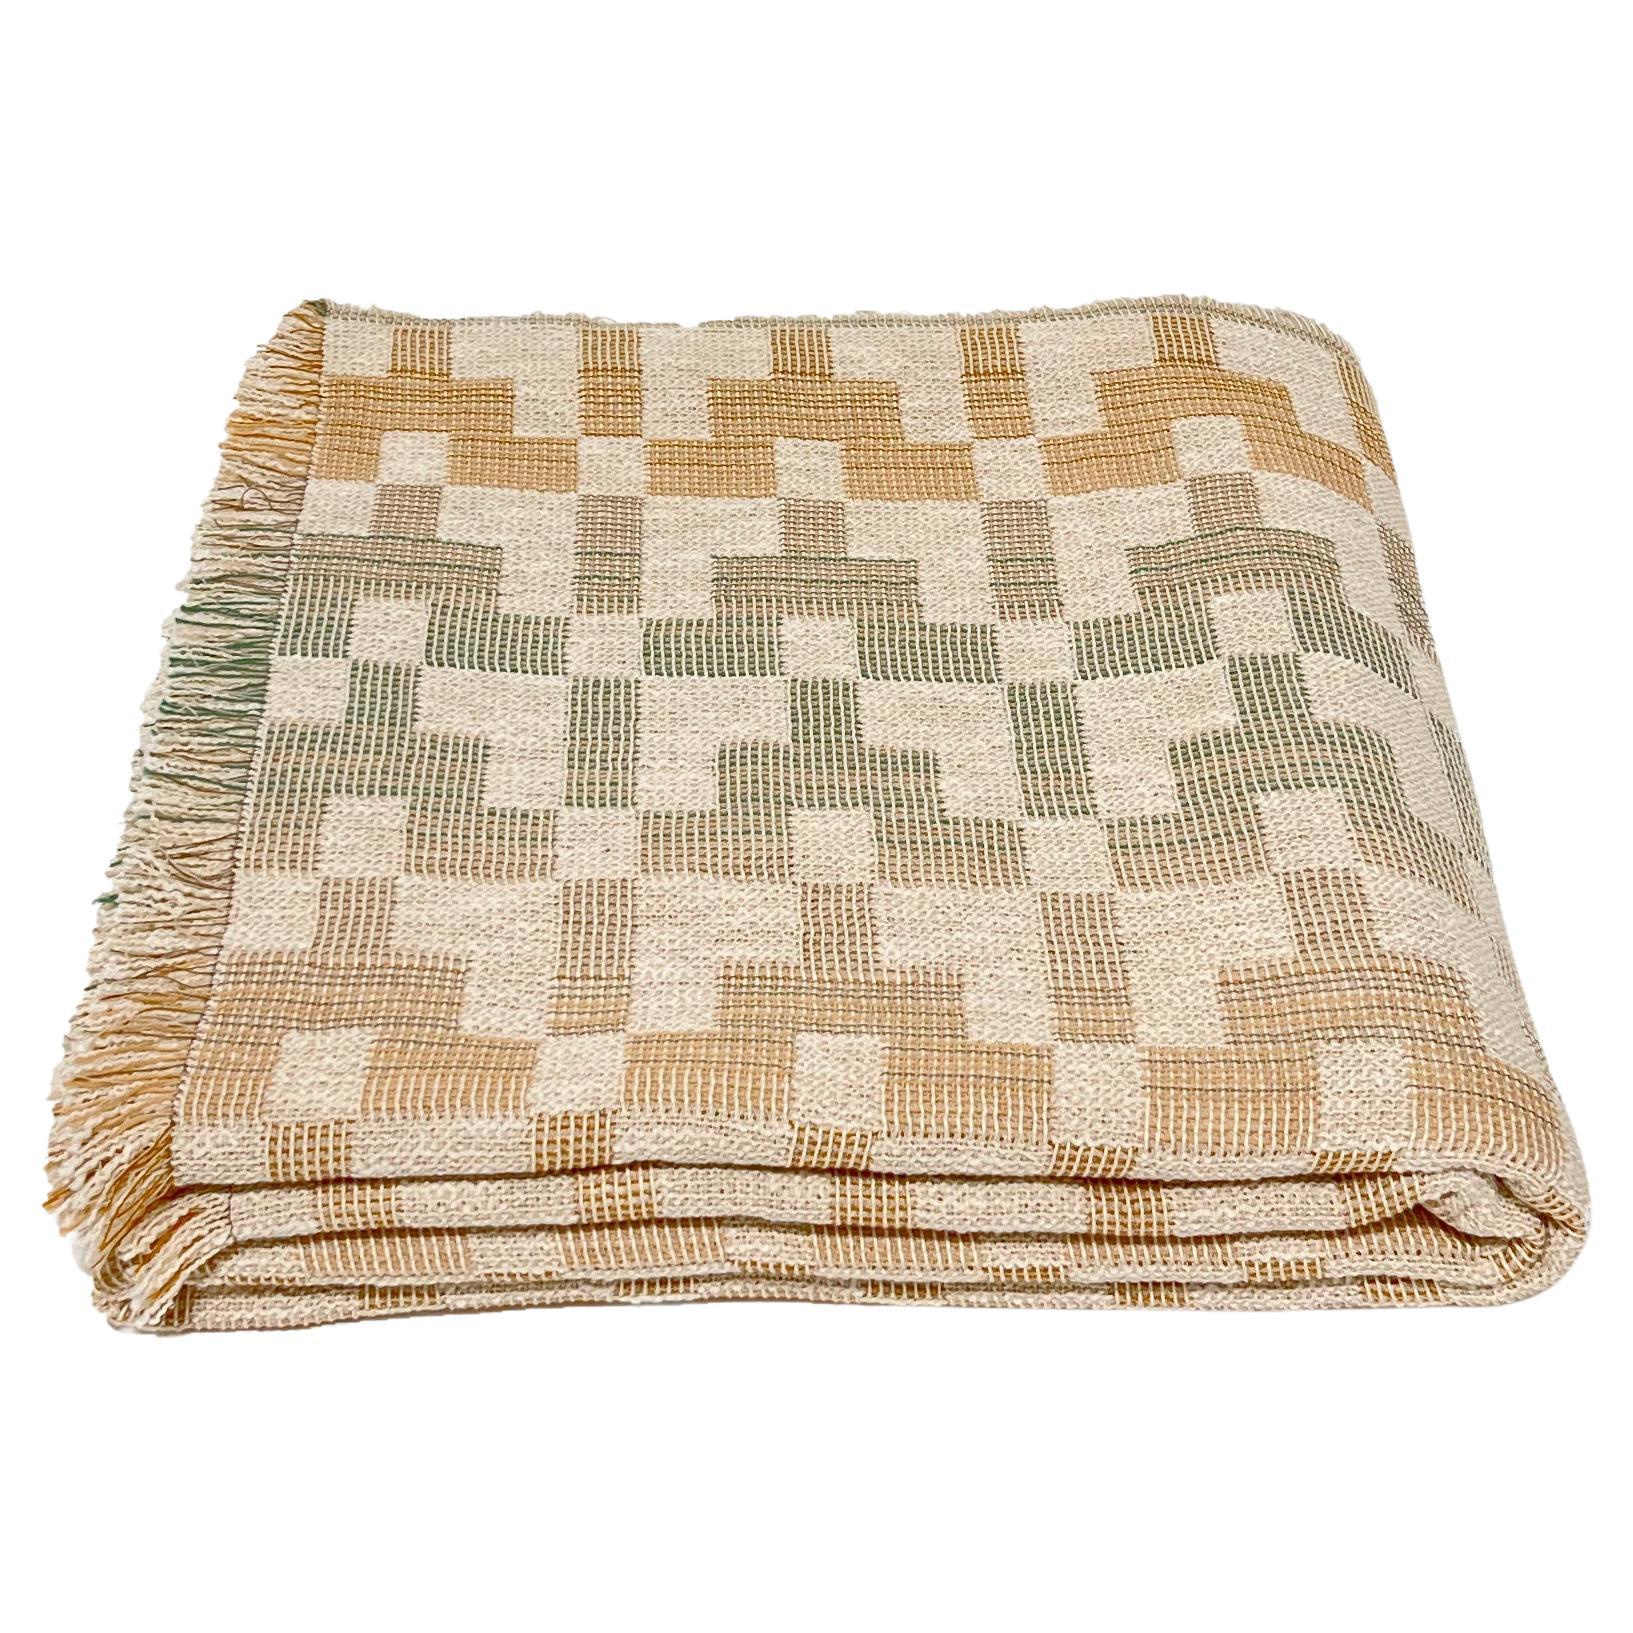 Couverture de lit en coton tissé à motifs par Folk Textiles (Esme/fade)